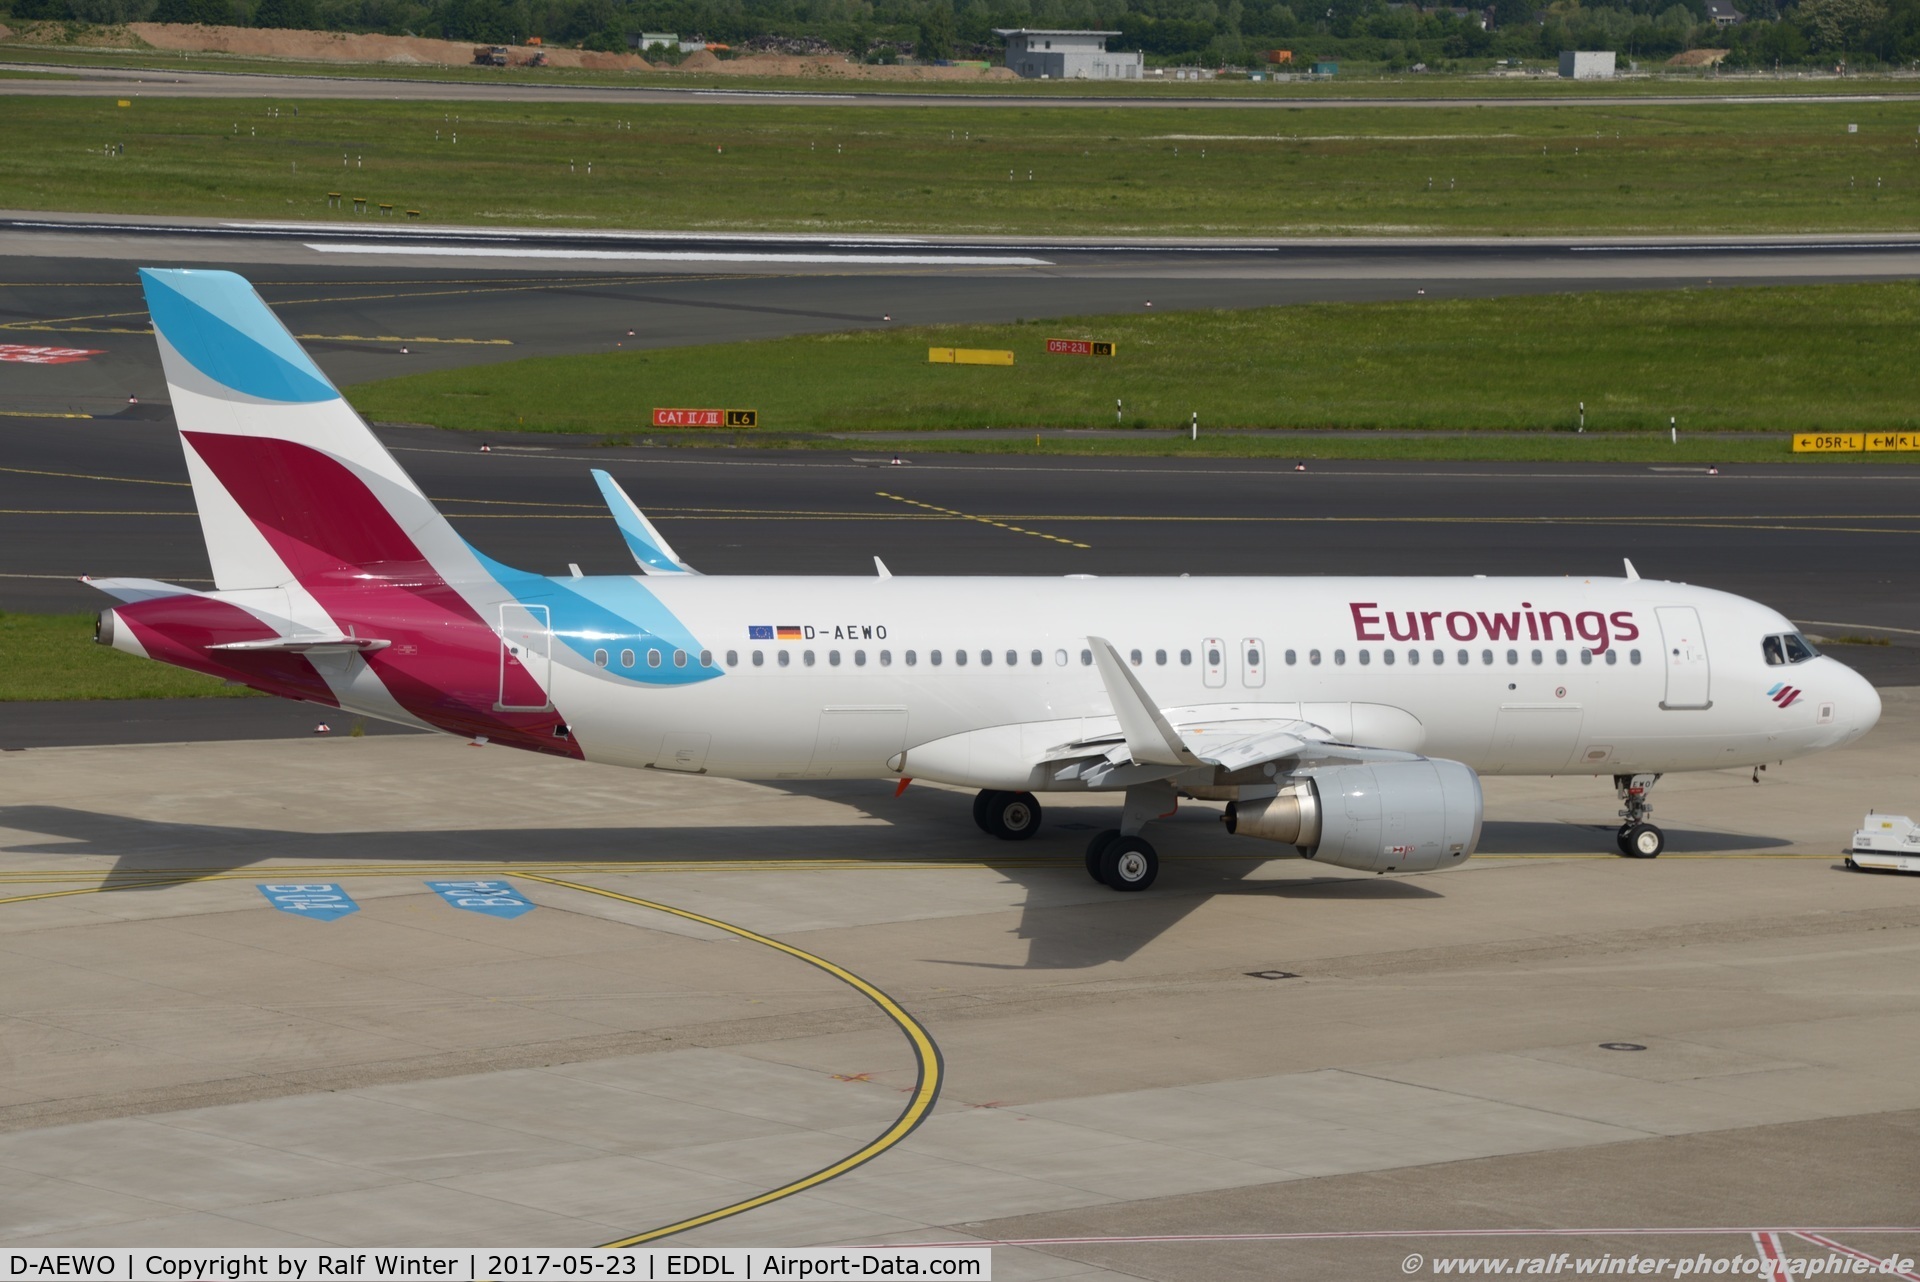 D-AEWO, 2016 Airbus A320-214 C/N 7394, Airbus A320-214(W) - EW EWG Eurowings - 7384 - D-AEWO - 23.05.2017 - DUS